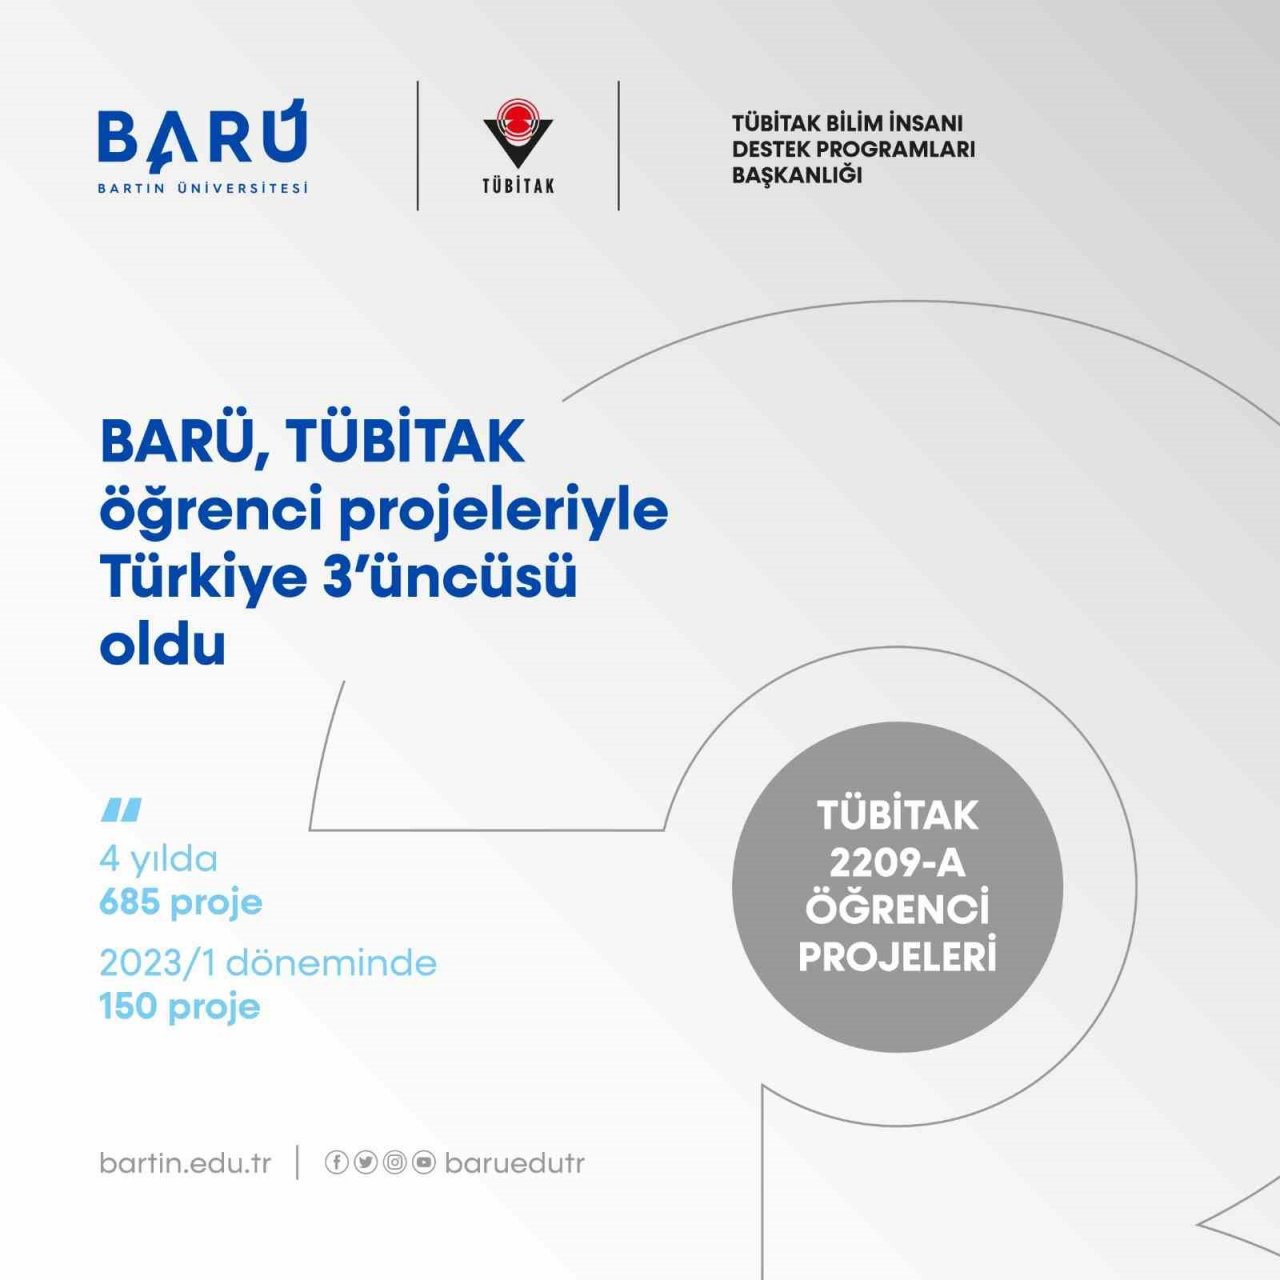 BARÜ, öğrenci projeleriyle Türkiye 3’üncüsü oldu